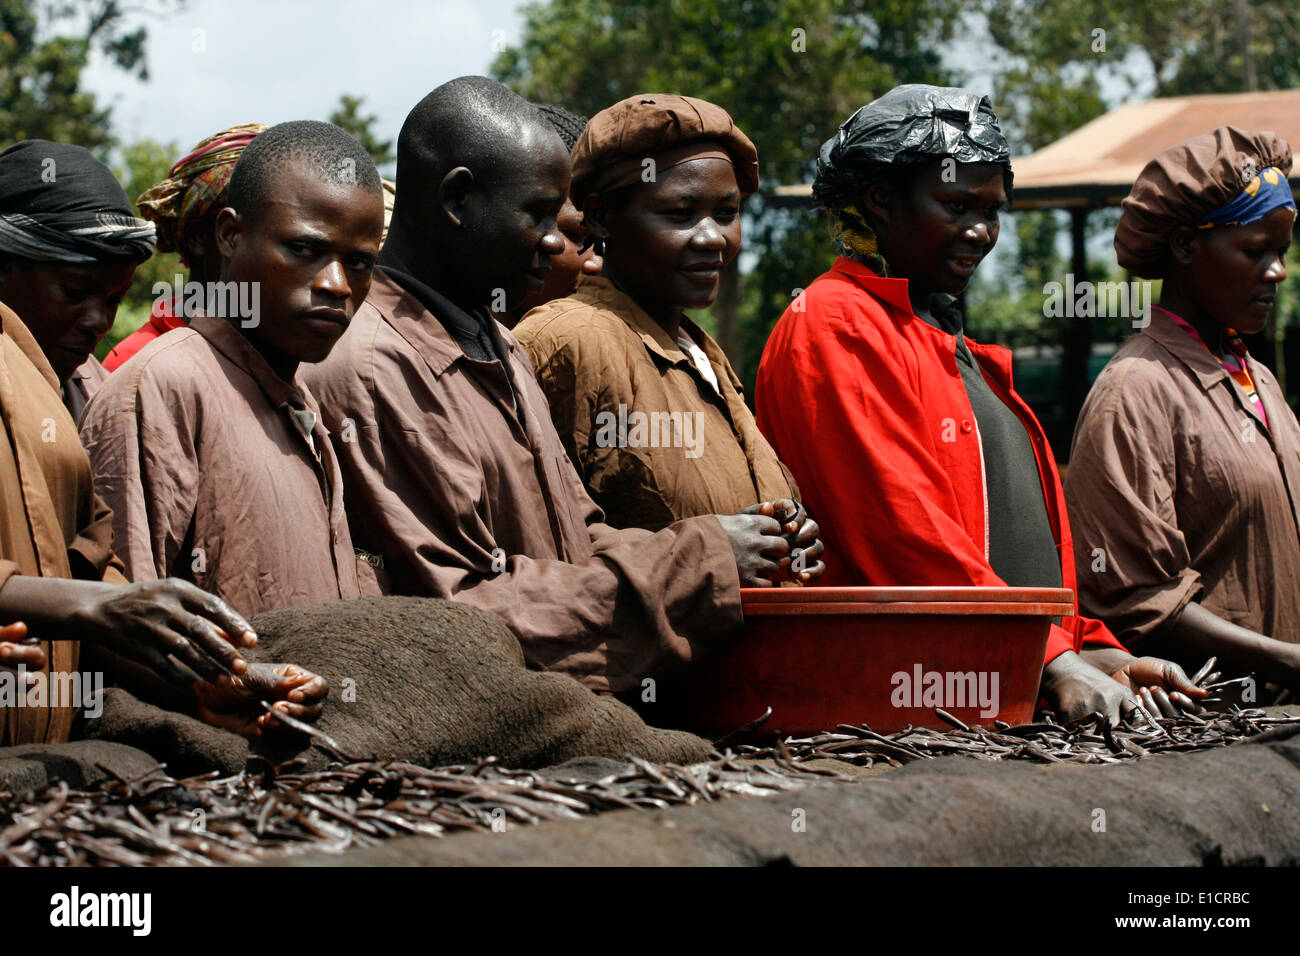 Vanille de tri des travailleurs sur une table de traitement, l'Ouganda Banque D'Images